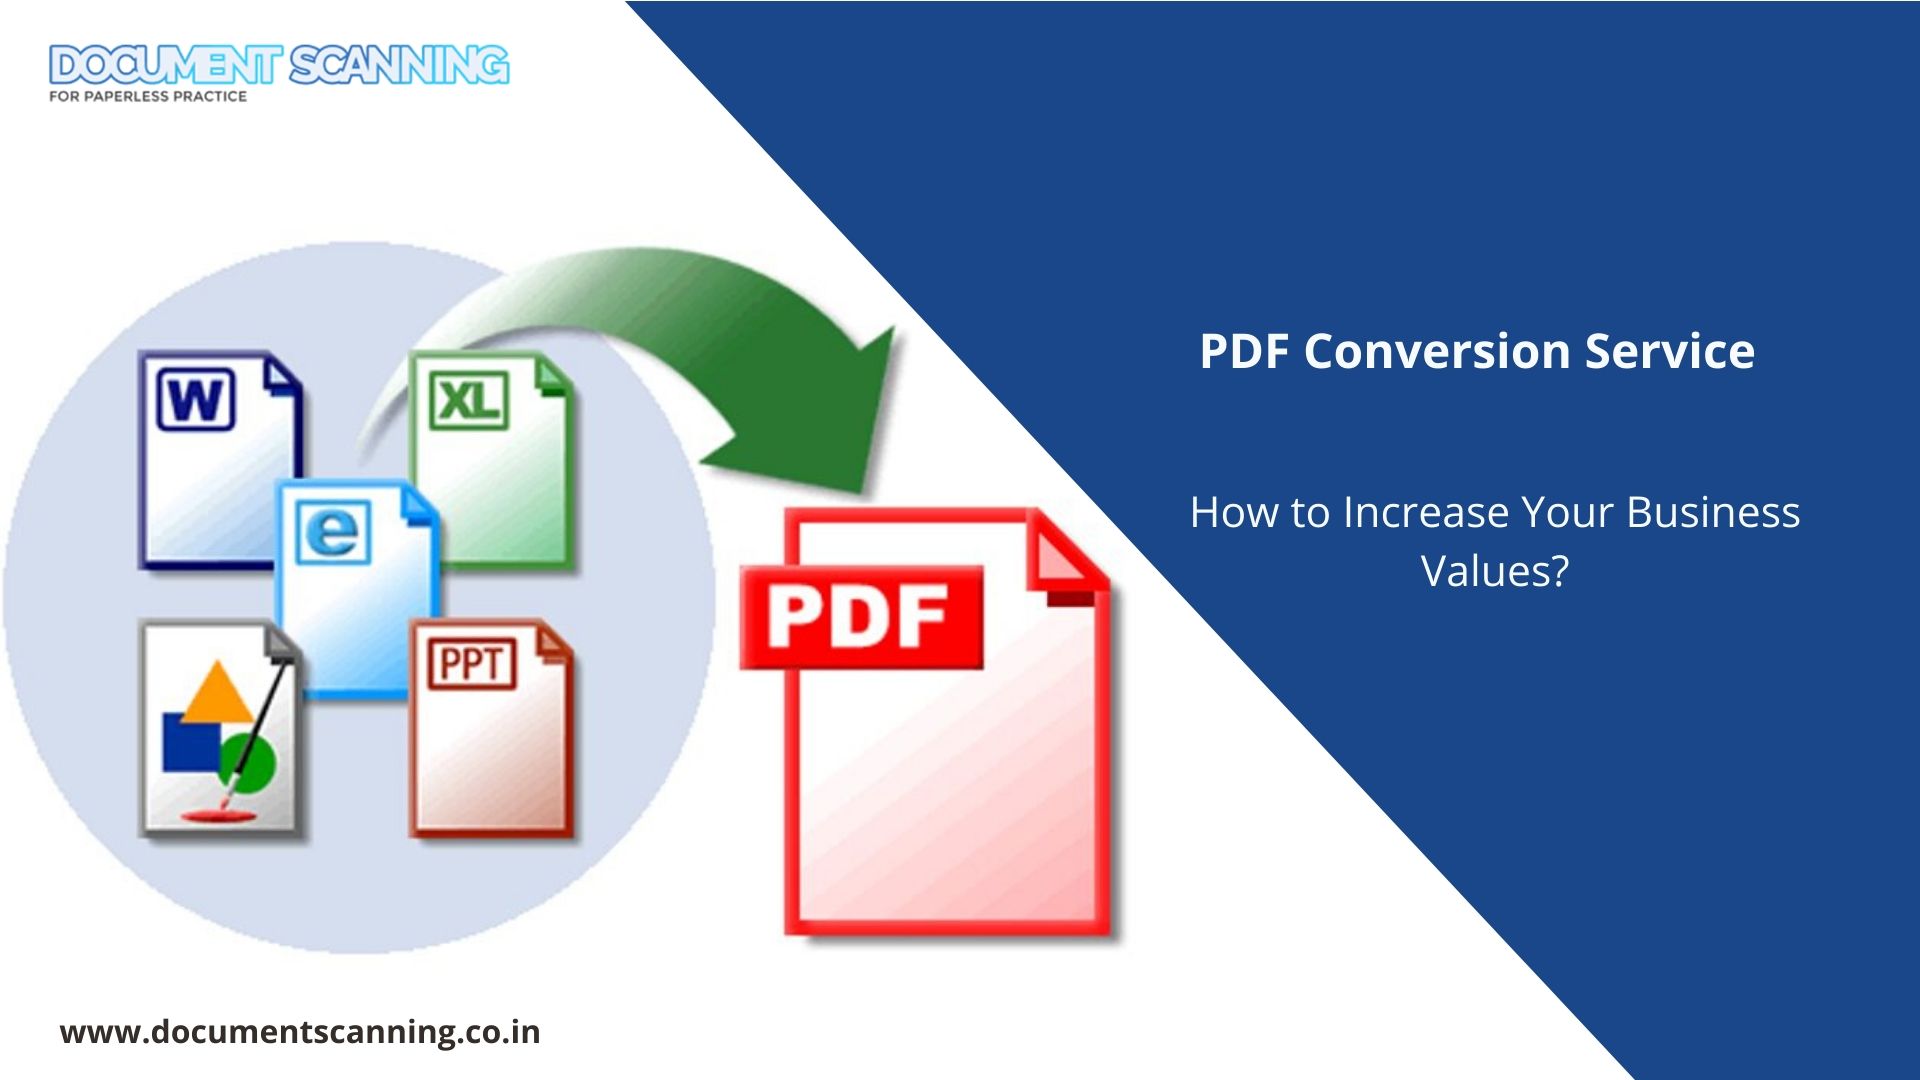 pdf conversion services